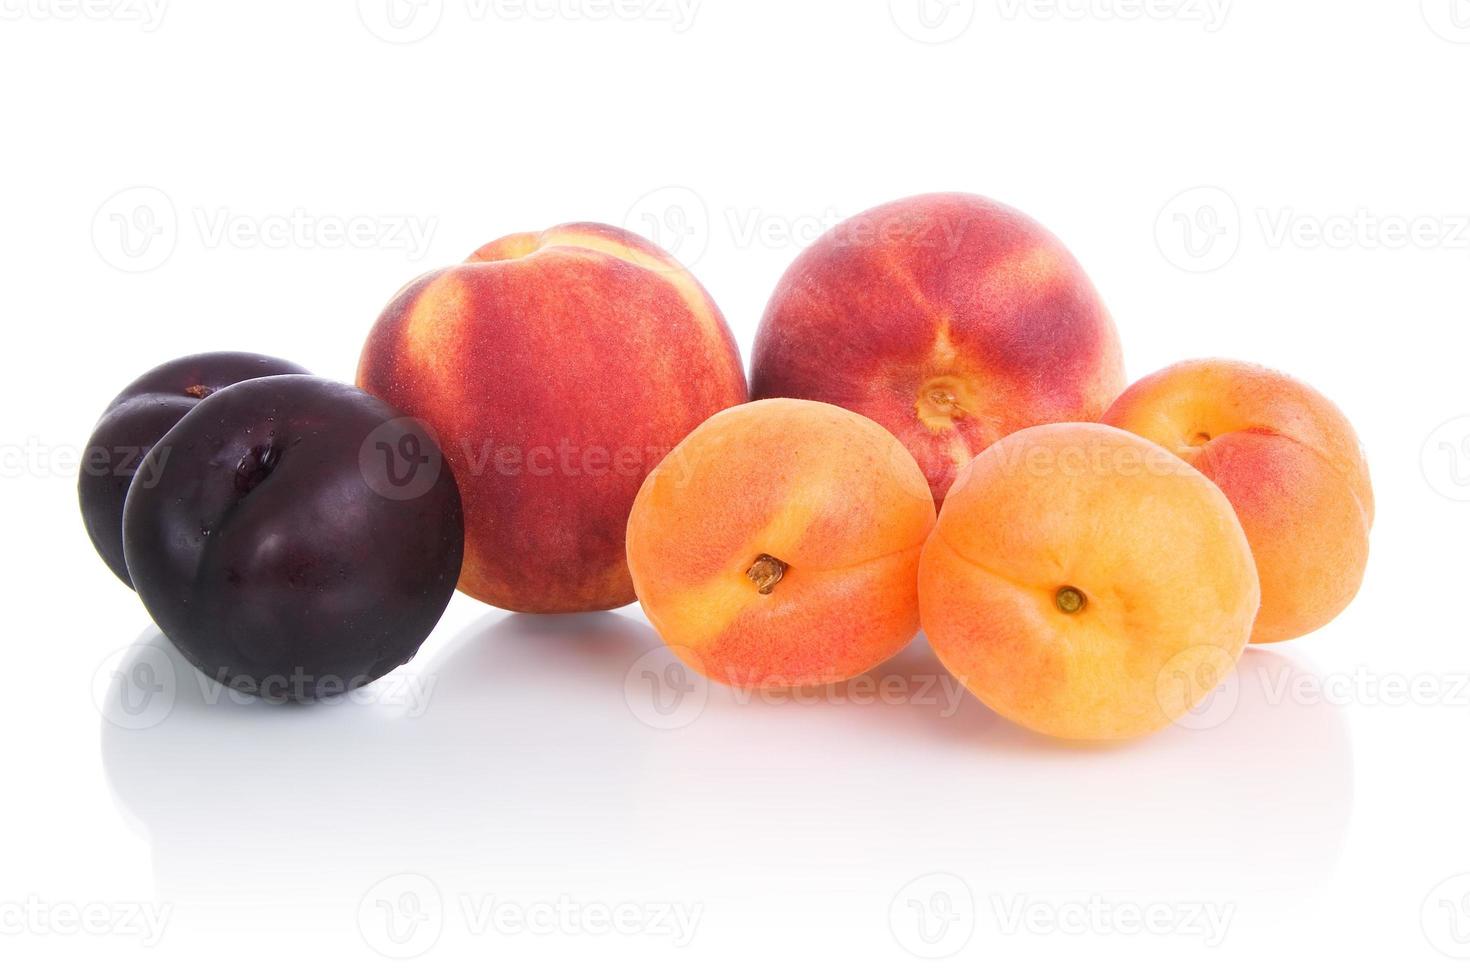 fruits - fruits à noyau. photo